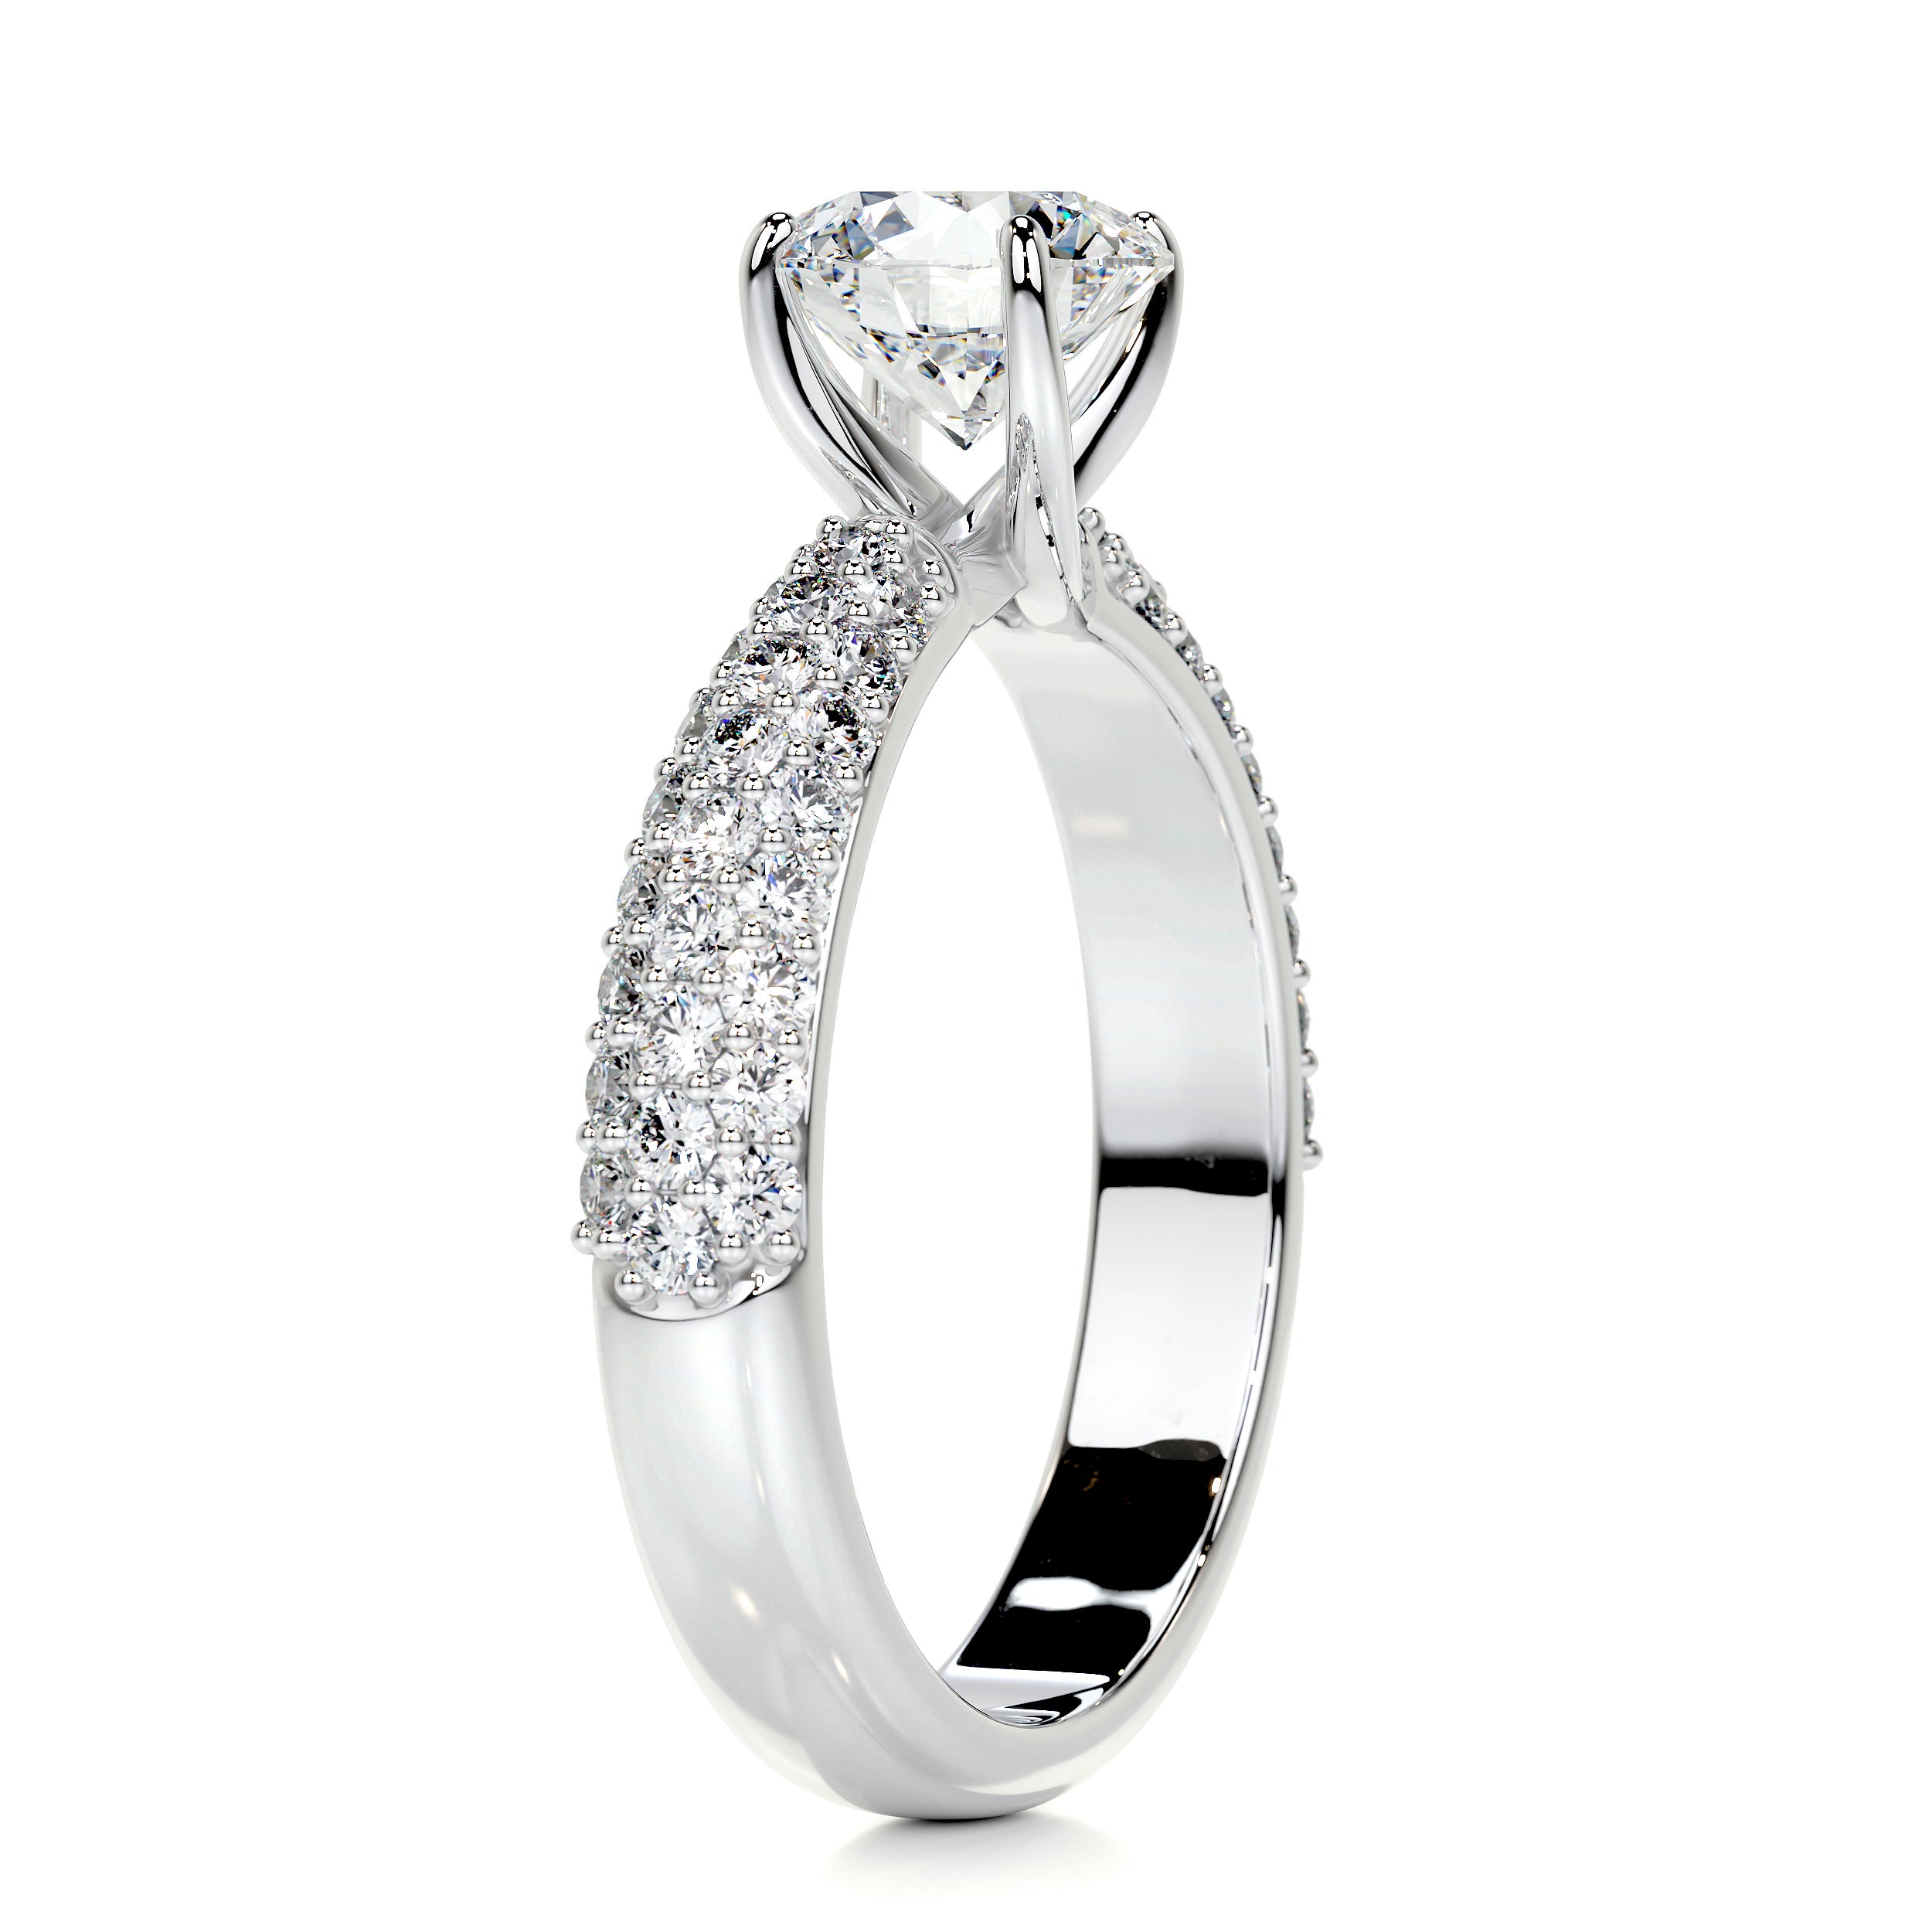 Alora Diamond Engagement Ring   (1.5 Carat) -18K White Gold